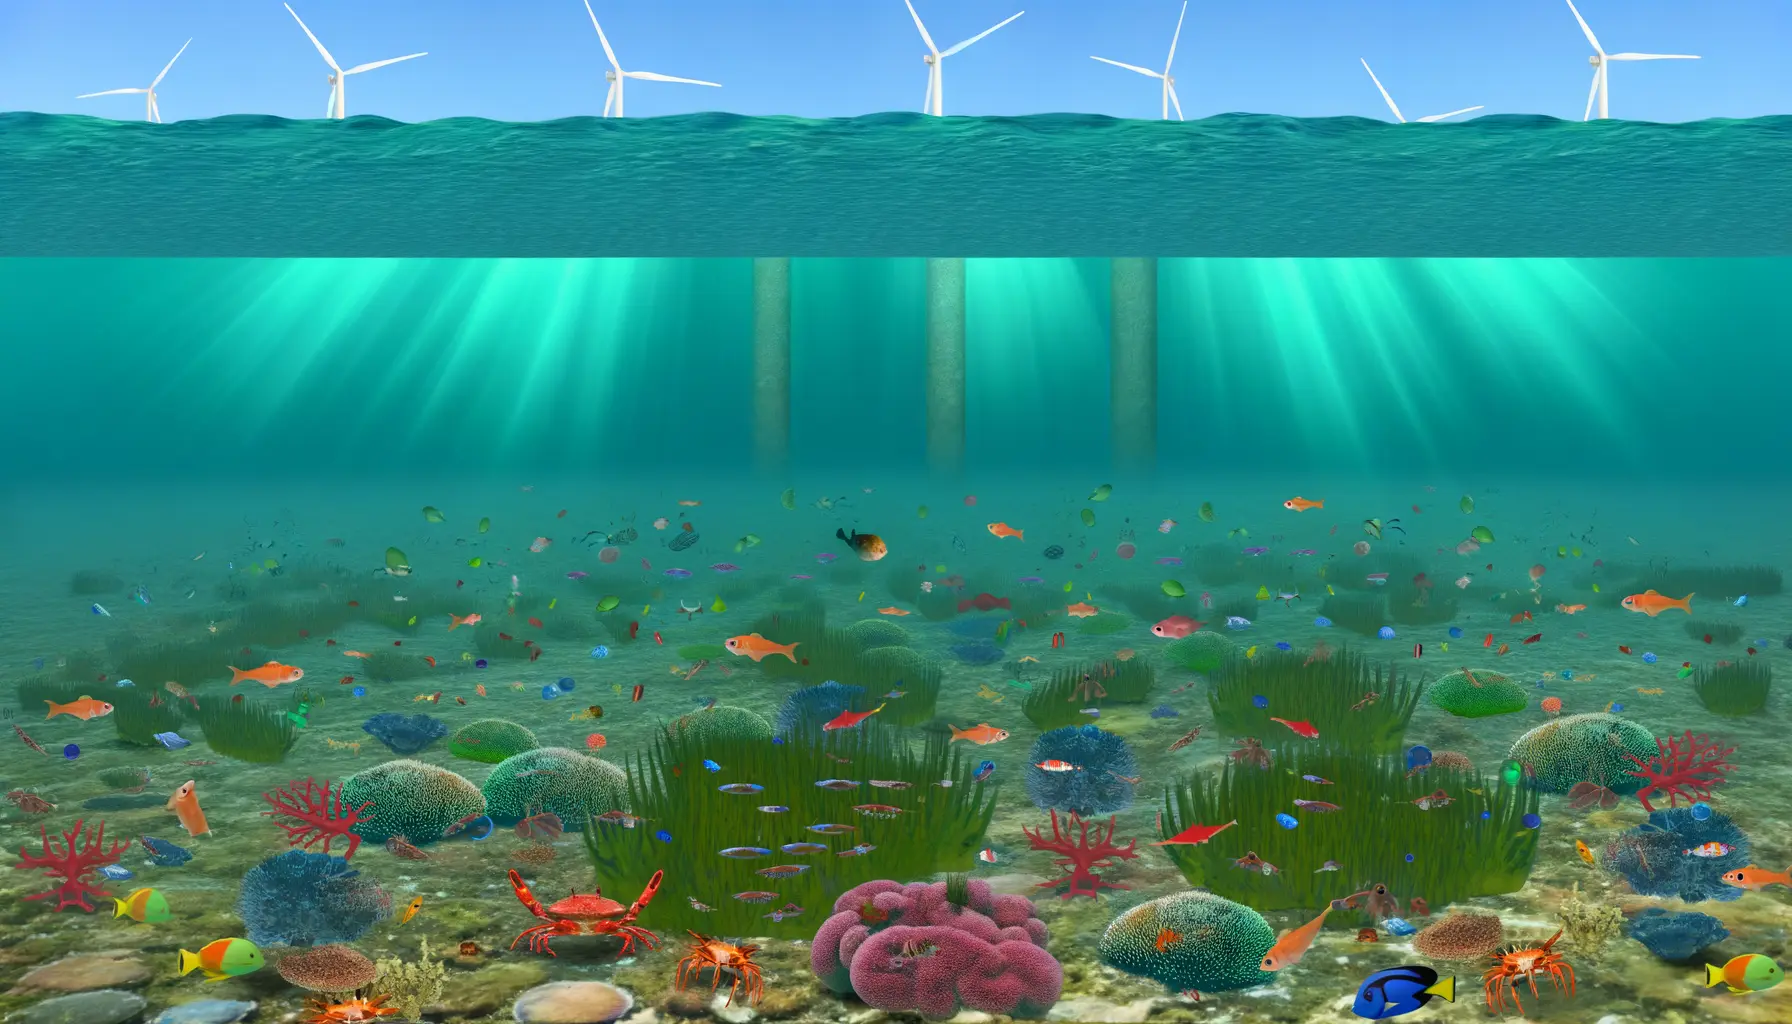 Illustration zur Biodiversität bei Offshore-Windparks